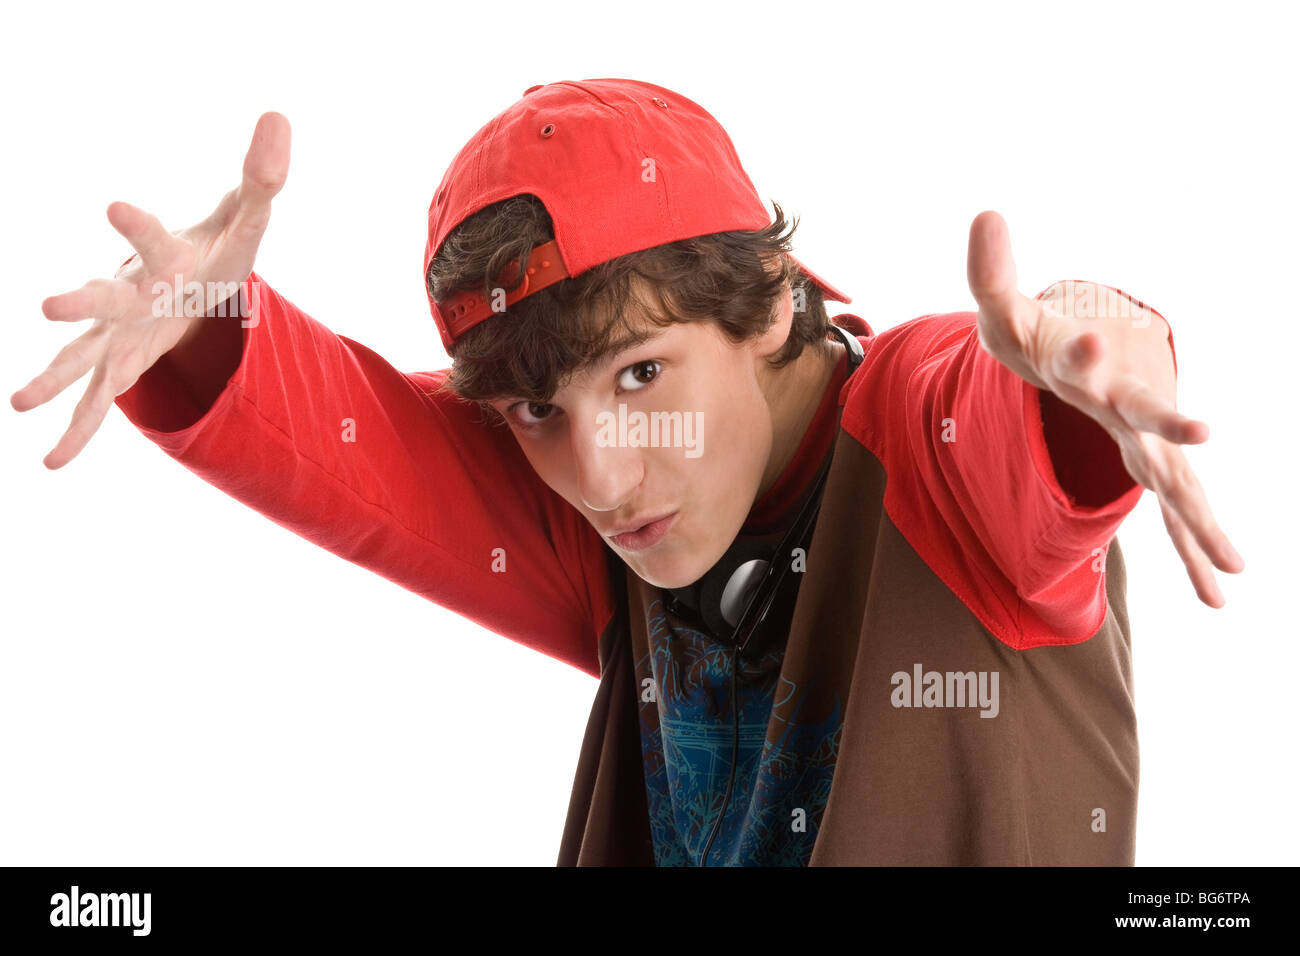 Intimidating teenage boy isolated on white background Stock Photo